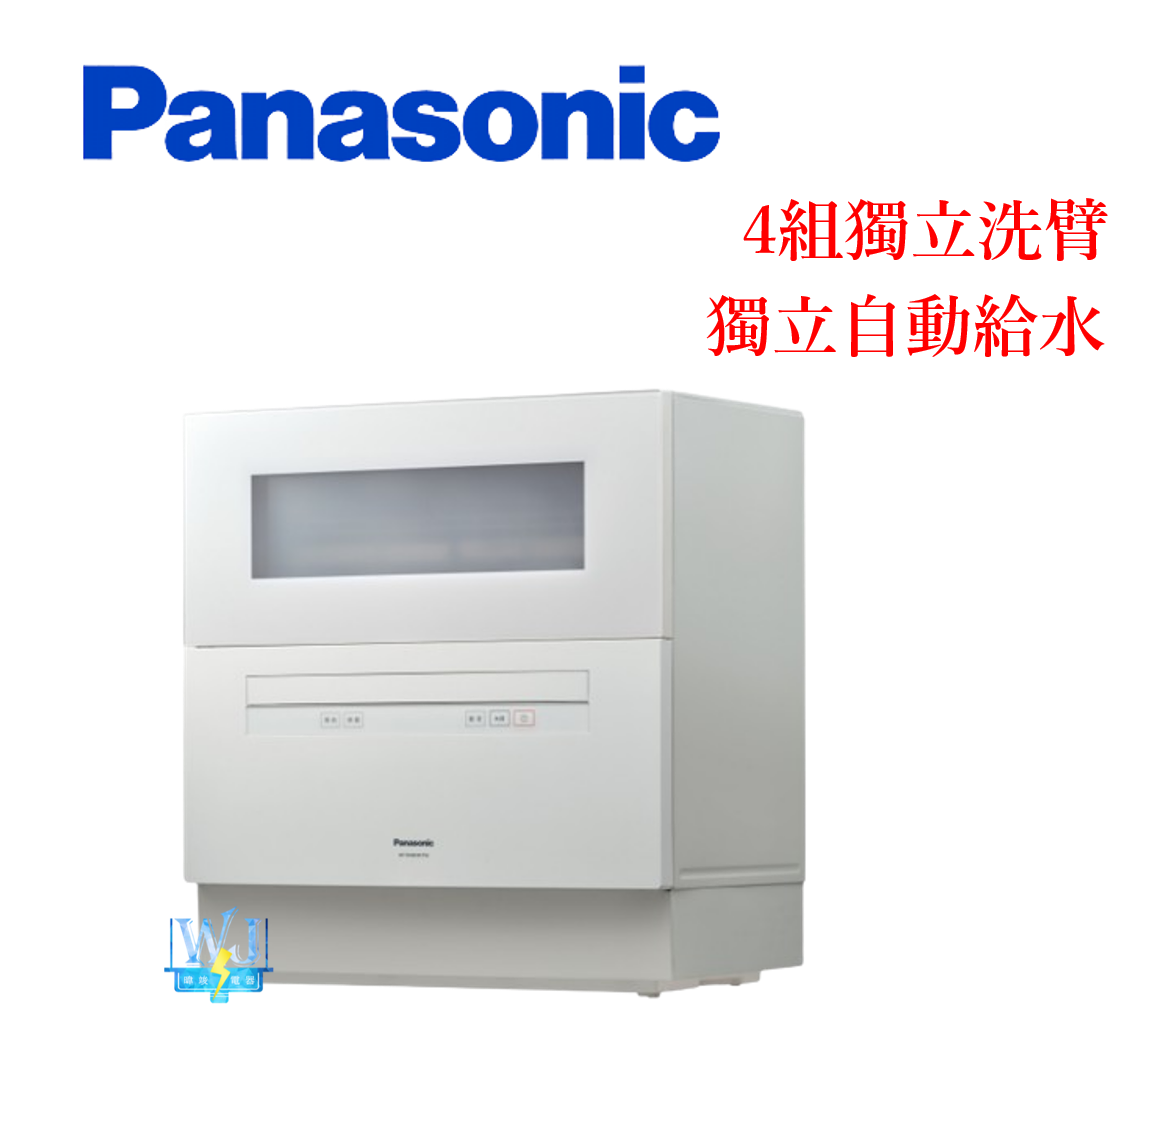 【原廠保固】Panasonic 國際牌 NP-TH4WHR1TW 自動洗碗機  NPTH4WHR1TW 桌上型